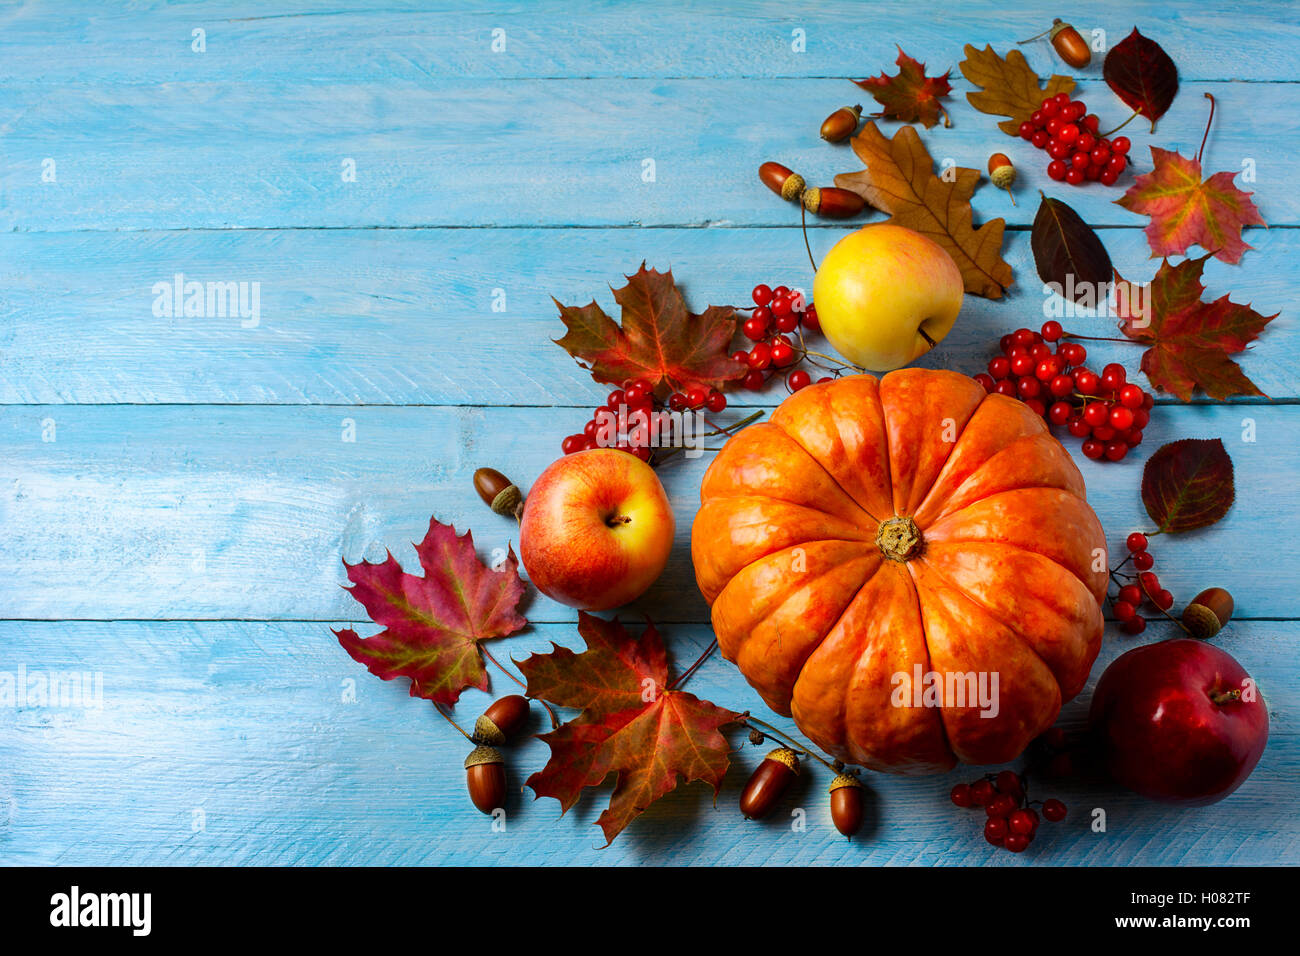 Kürbis, Äpfel, Beeren, Eicheln und Herbst Blätter auf blauem Hintergrund Textfreiraum. Thanksgiving-Hintergrund mit Saisongemüse Stockfoto